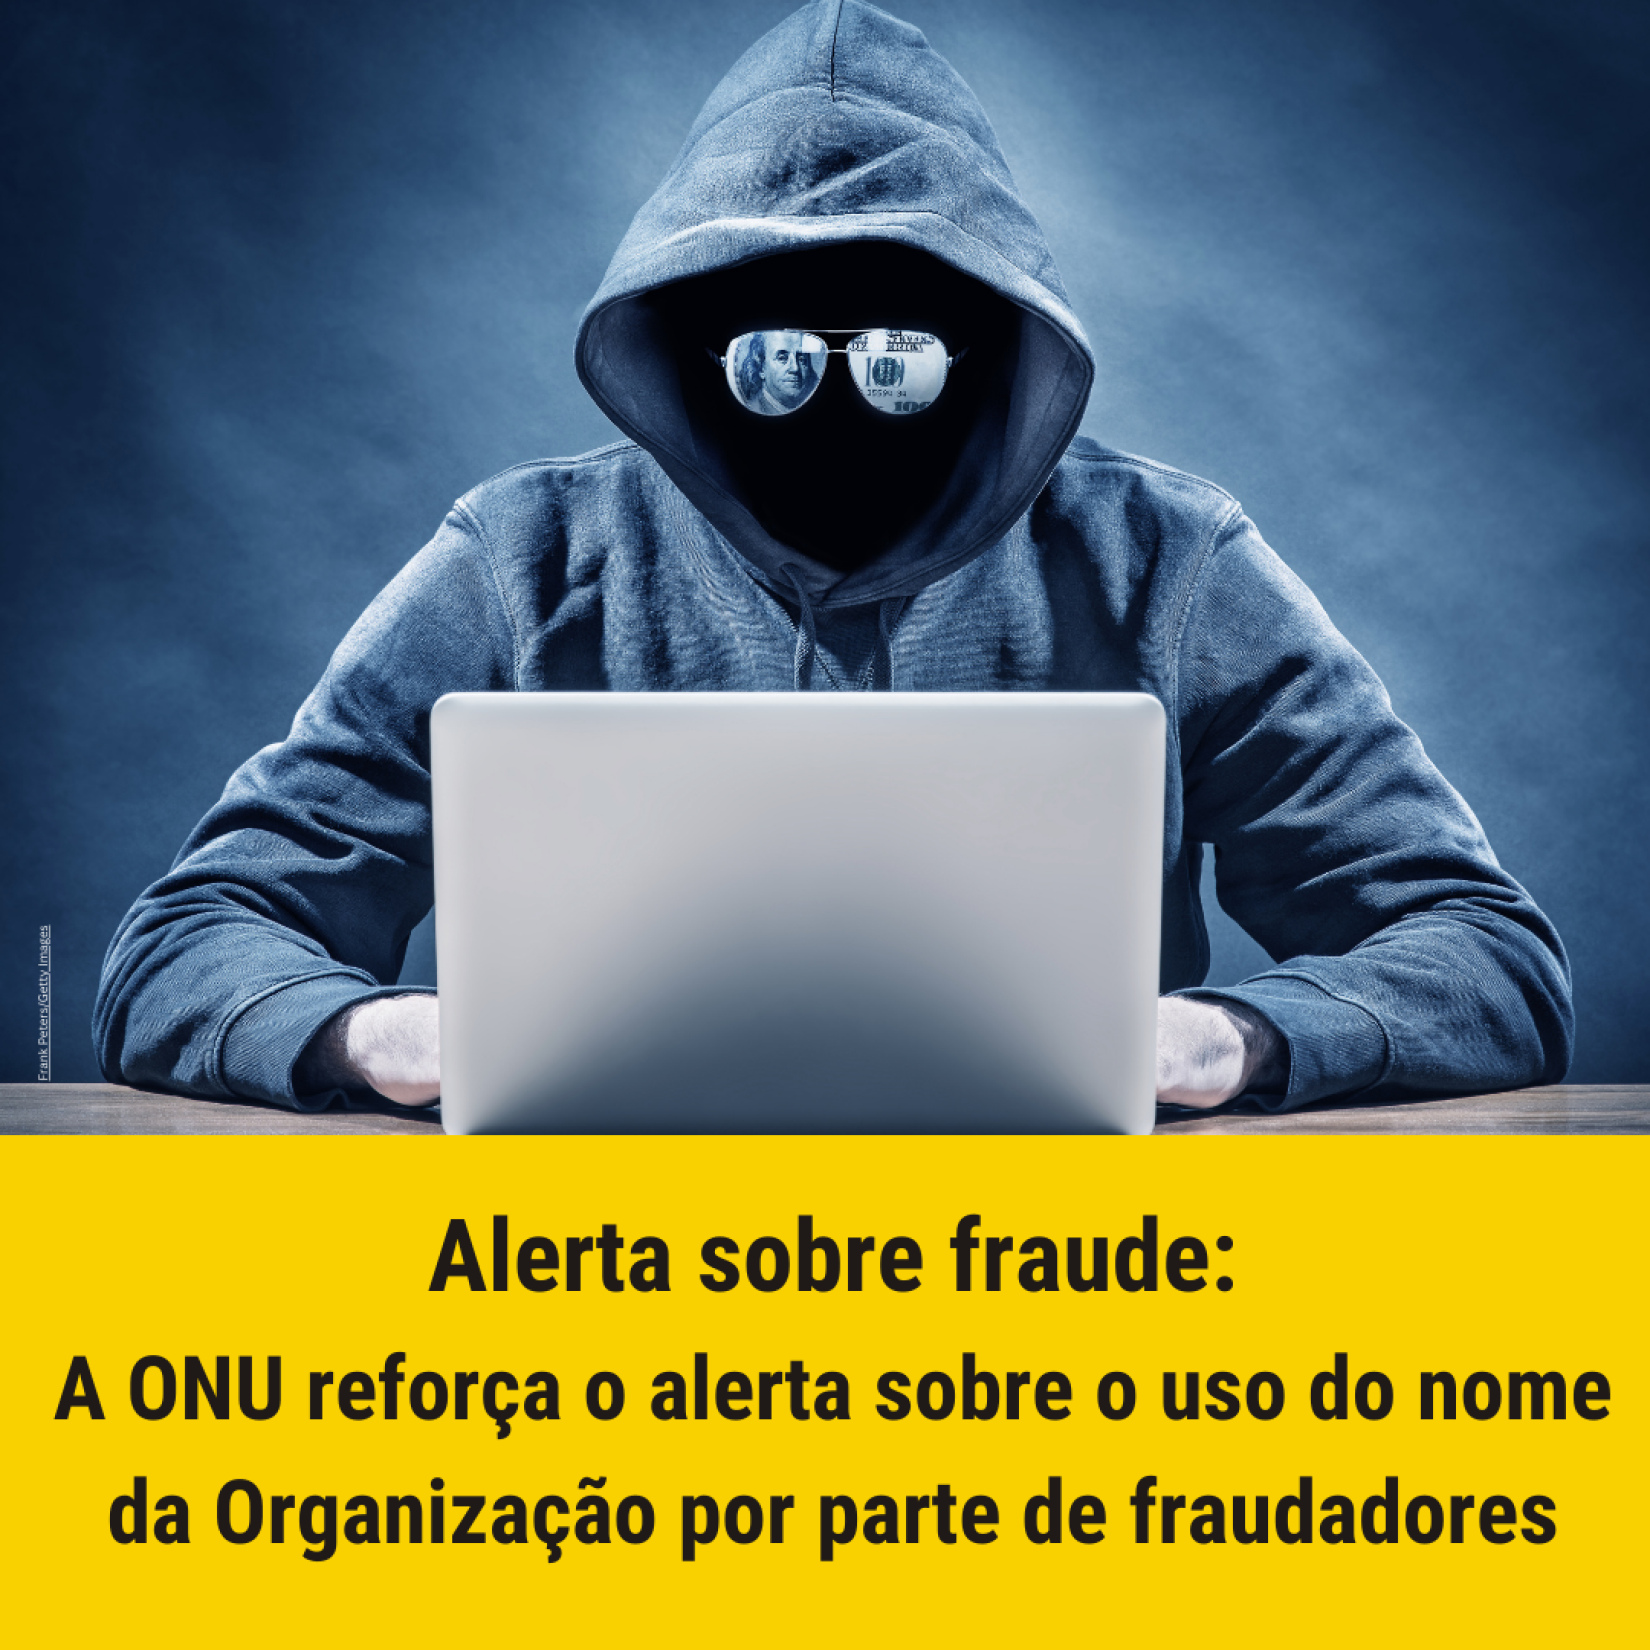 Alerta: Fraudadores usam internet e redes sociais para conseguir dados pessoais. 